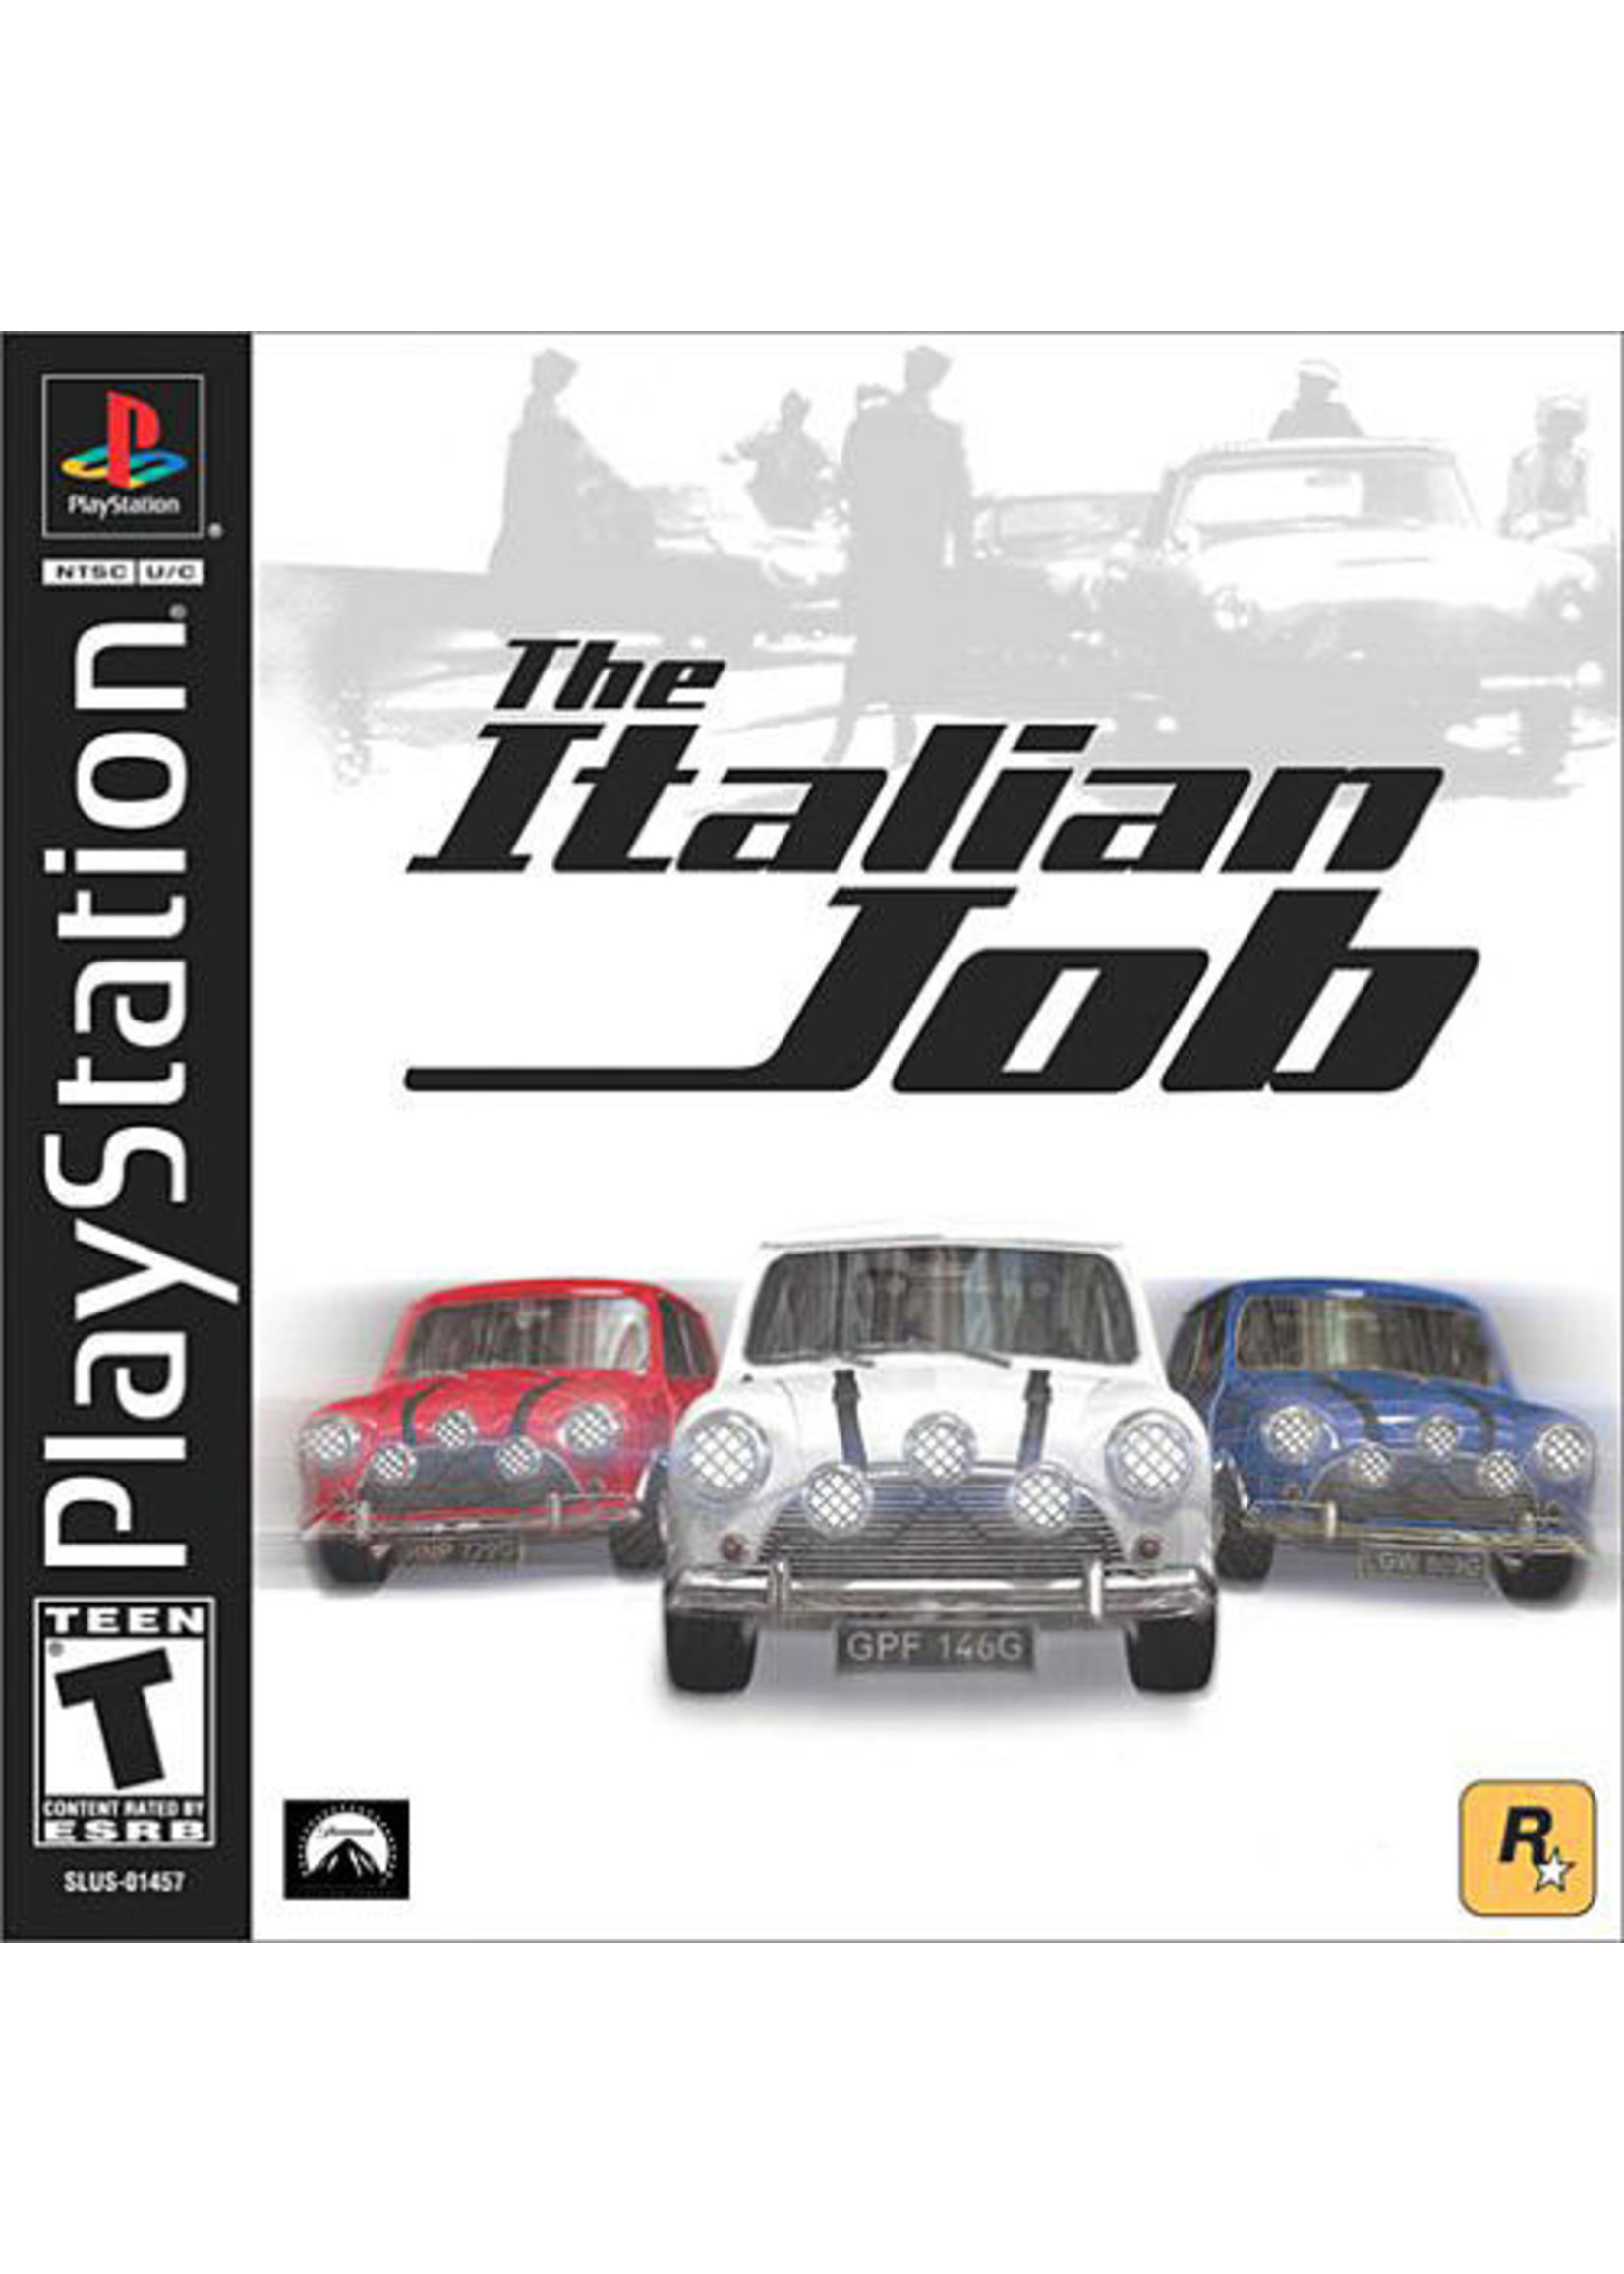 Sony Playstation 1 (PS1) Italian Job, The